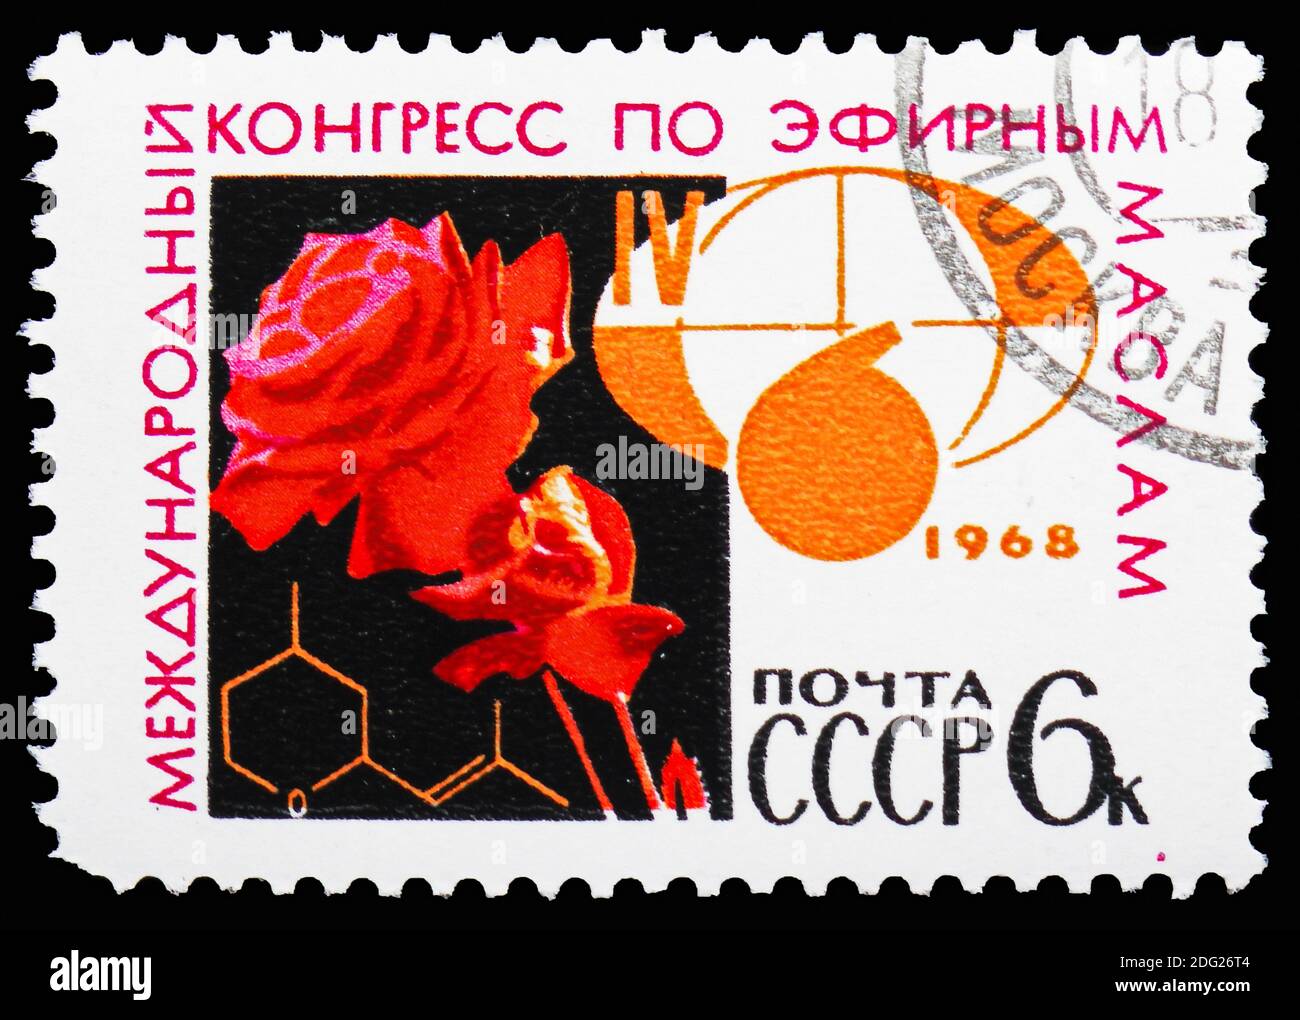 MOSCA, RUSSIA - 21 OTTOBRE 2018: Un francobollo stampato in URSS (Russia) mostra Congressi internazionali per oli essenziali, Serie Congressi internazionali Foto Stock